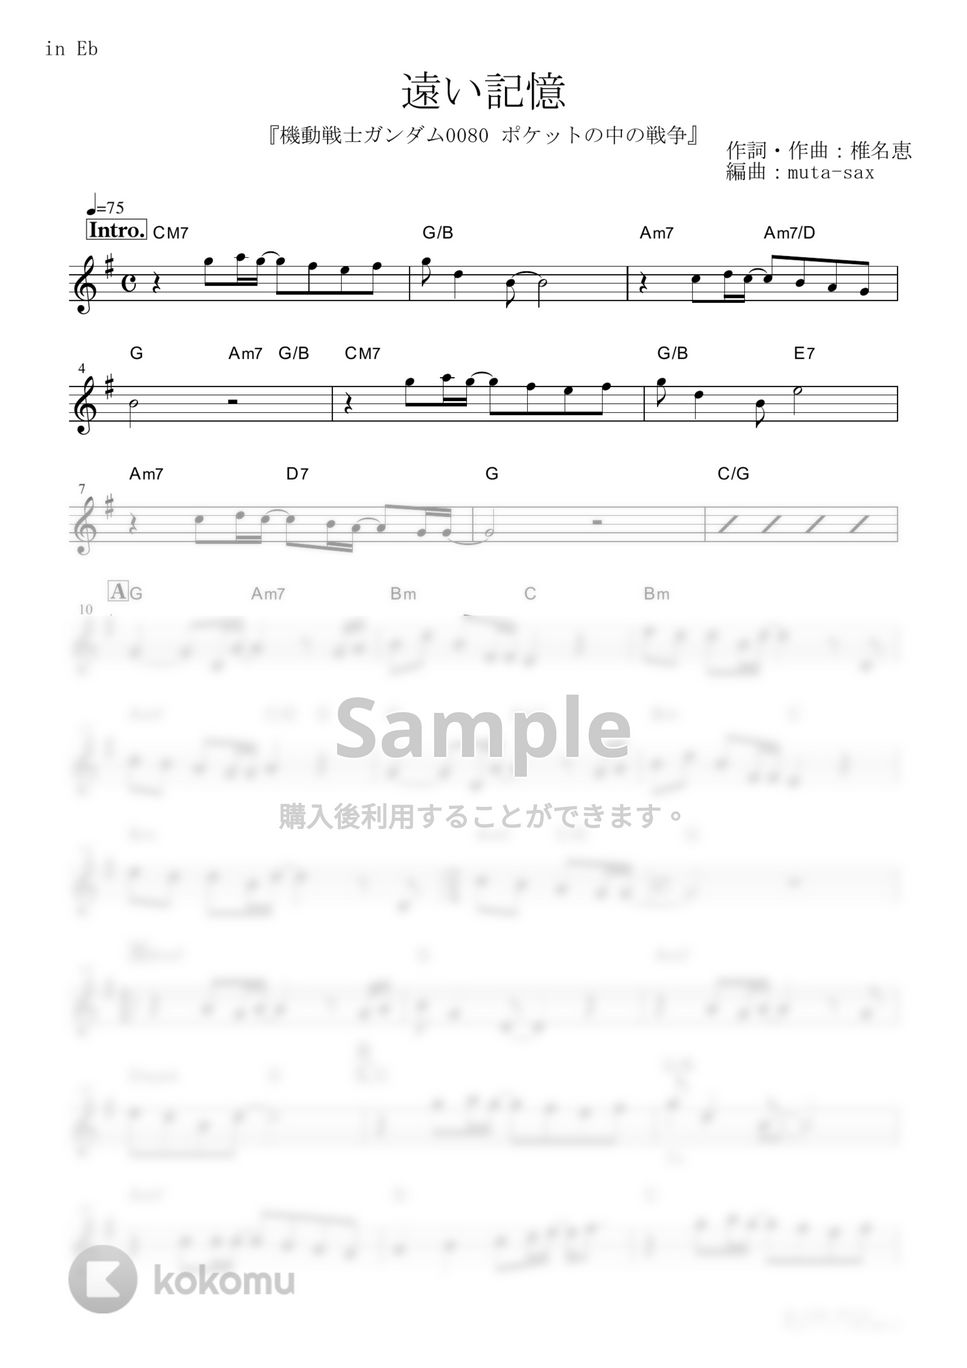 椎名恵 - 遠い記憶 (『機動戦士ガンダム0080 ポケットの中の戦争』 / in Eb) by muta-sax